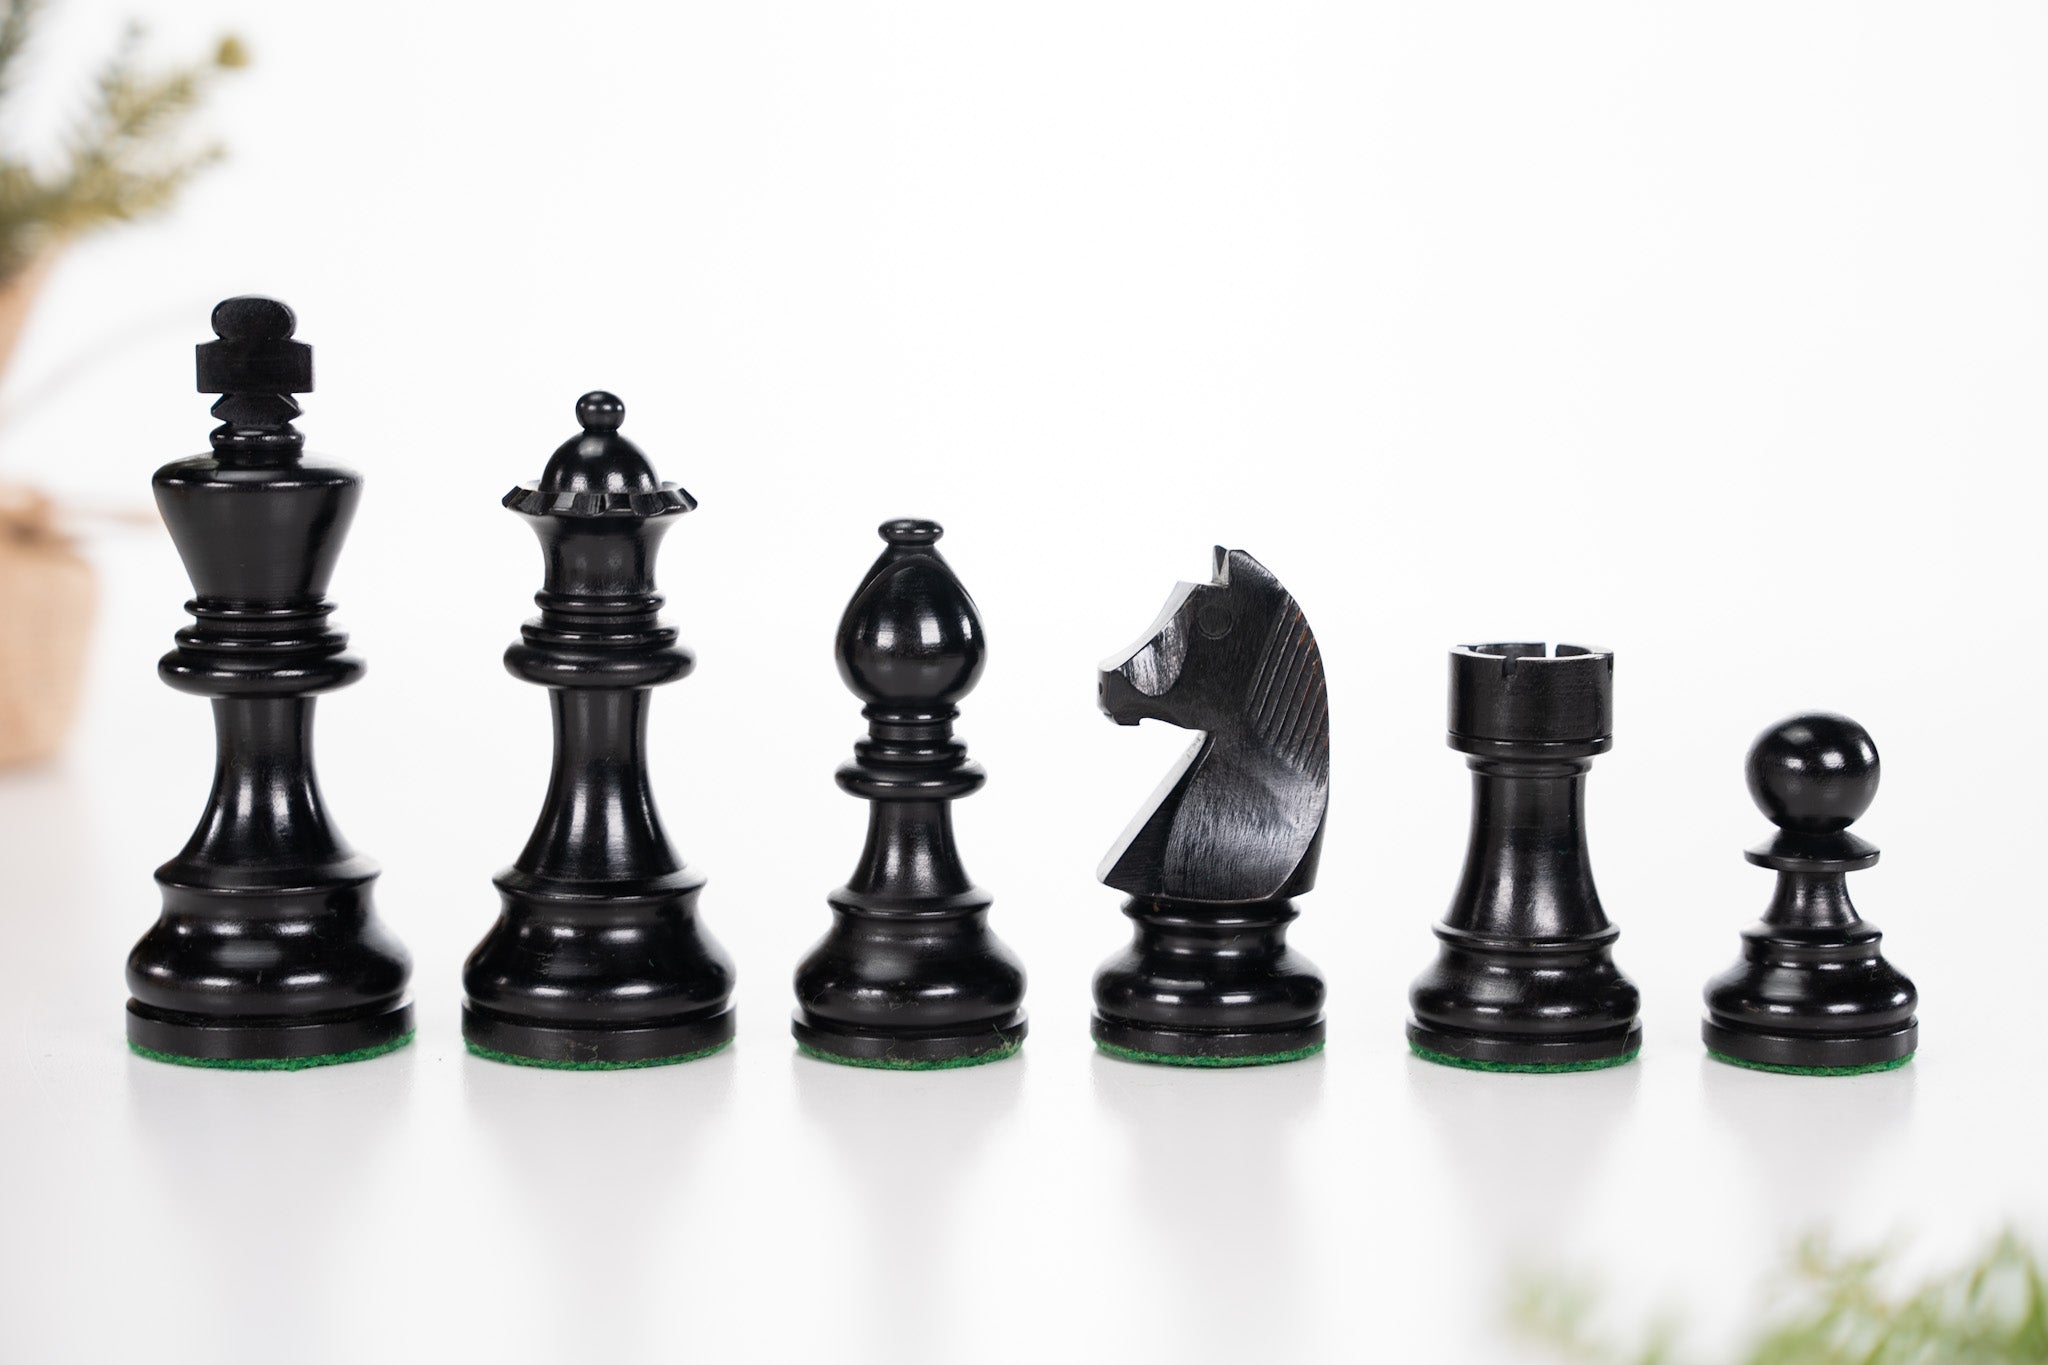 3 7/8" German Staunton Chessmen - Ebonized - Piece - Chess-House